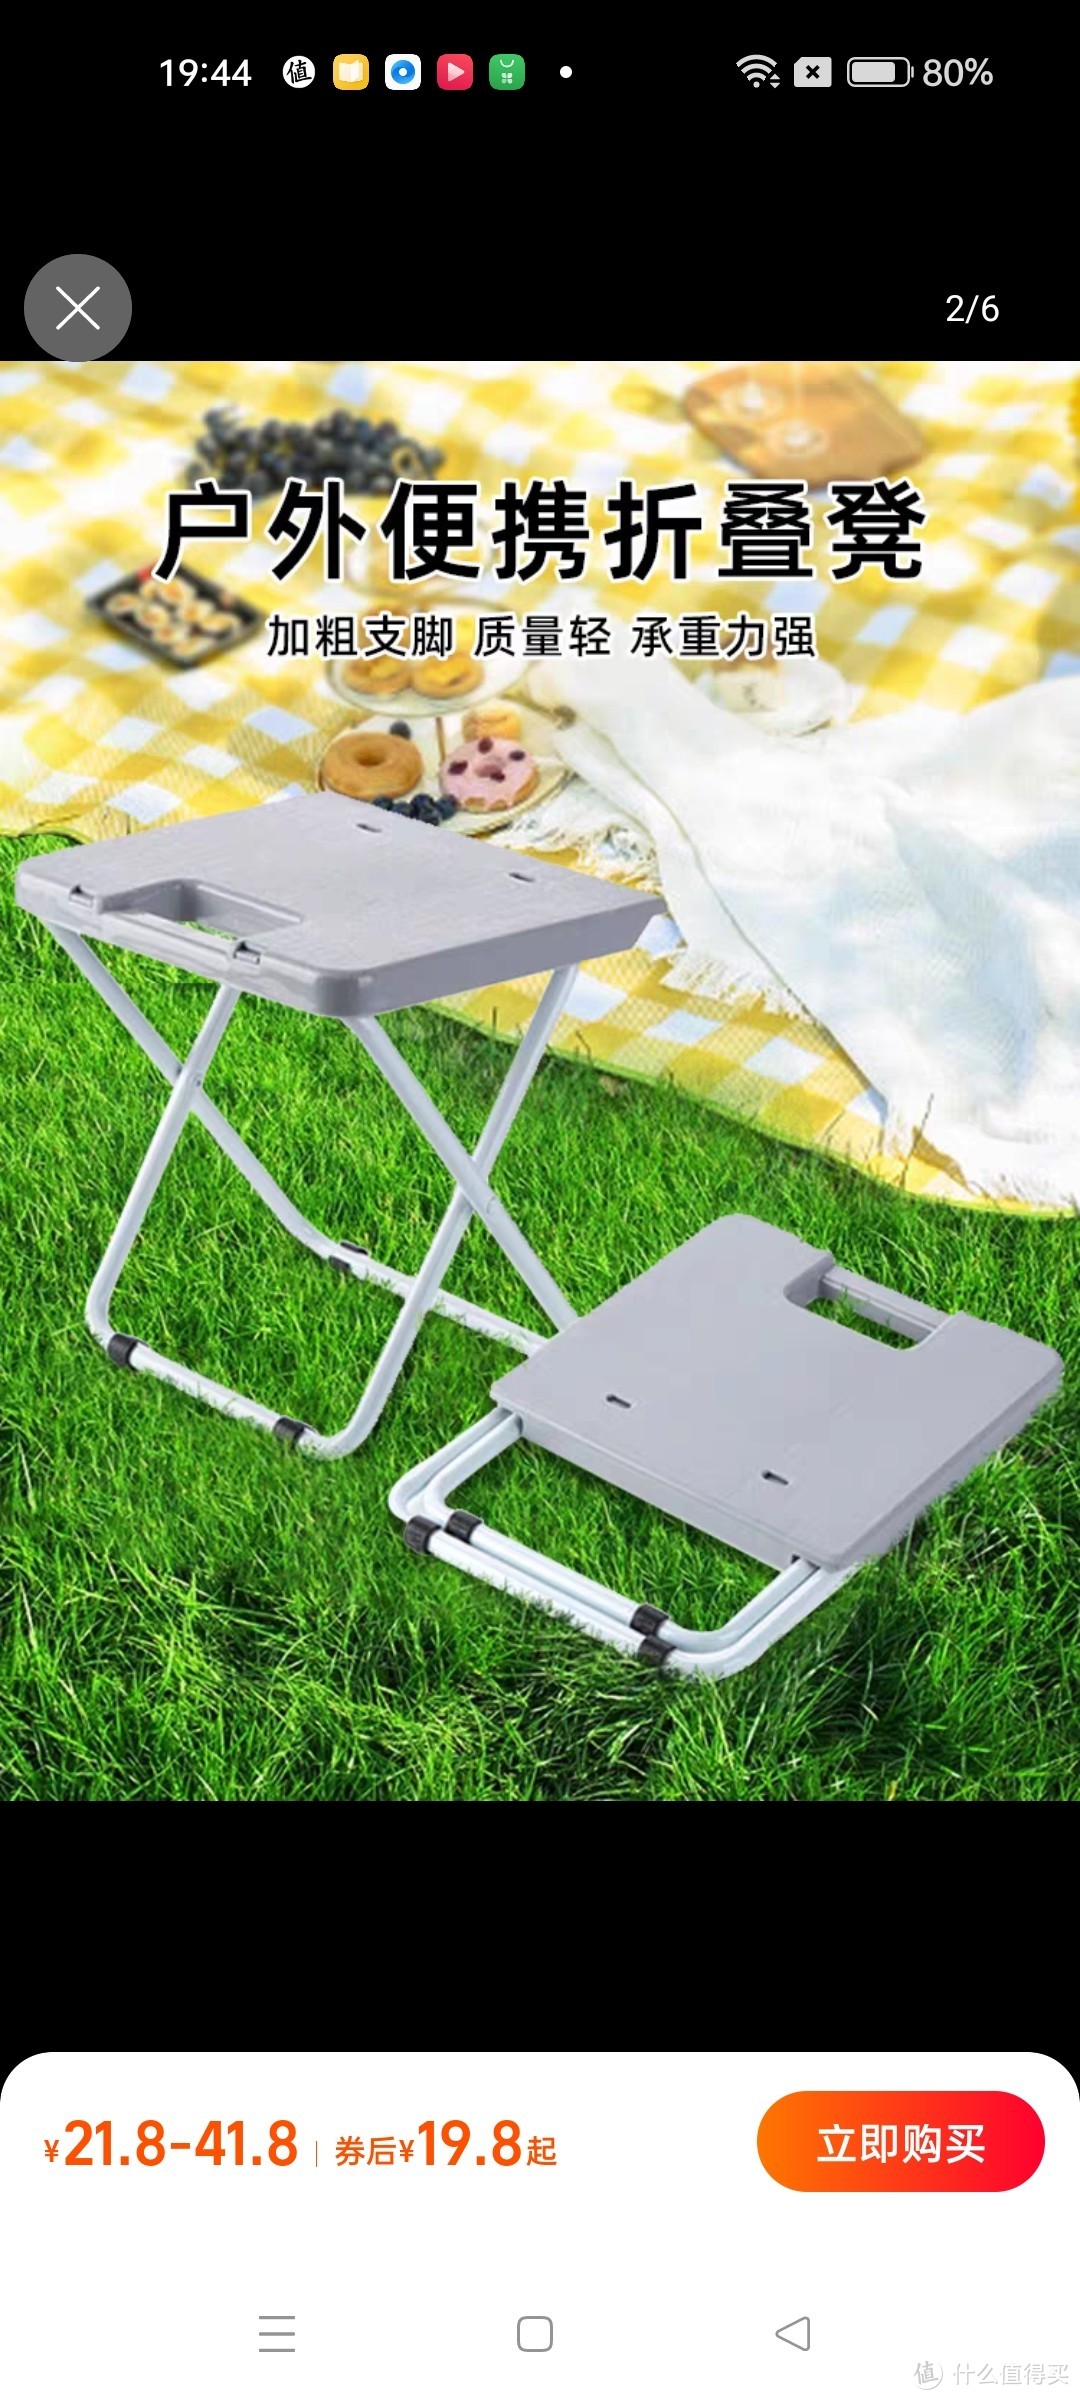 户外折叠椅钓鱼椅超轻便携式小板凳装备塑料马扎烧烤露营野餐凳子